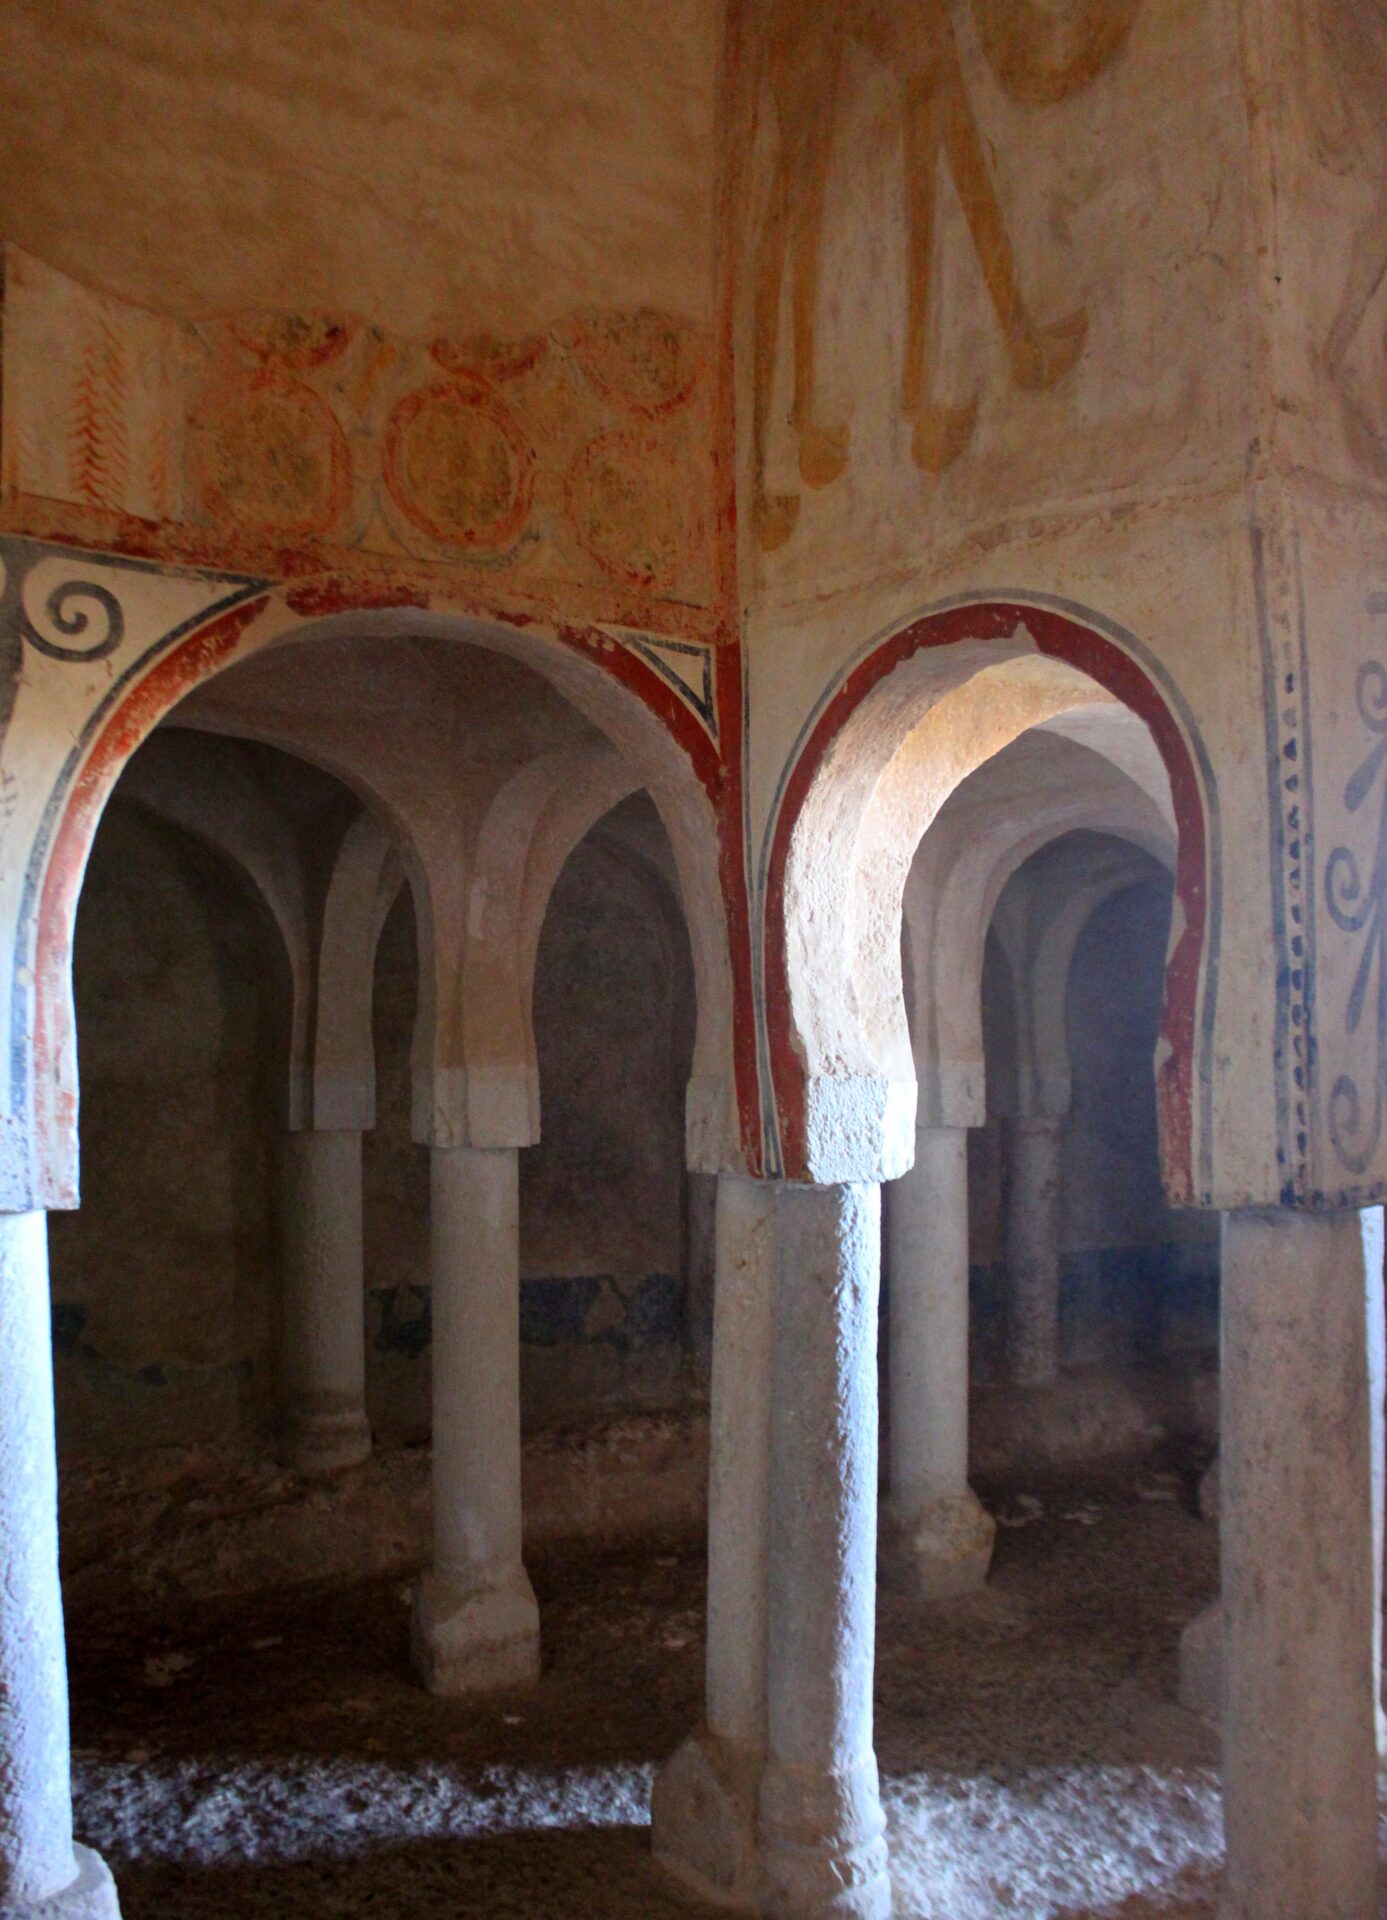 Nave interior de arcos de la ermita de San Baudelio